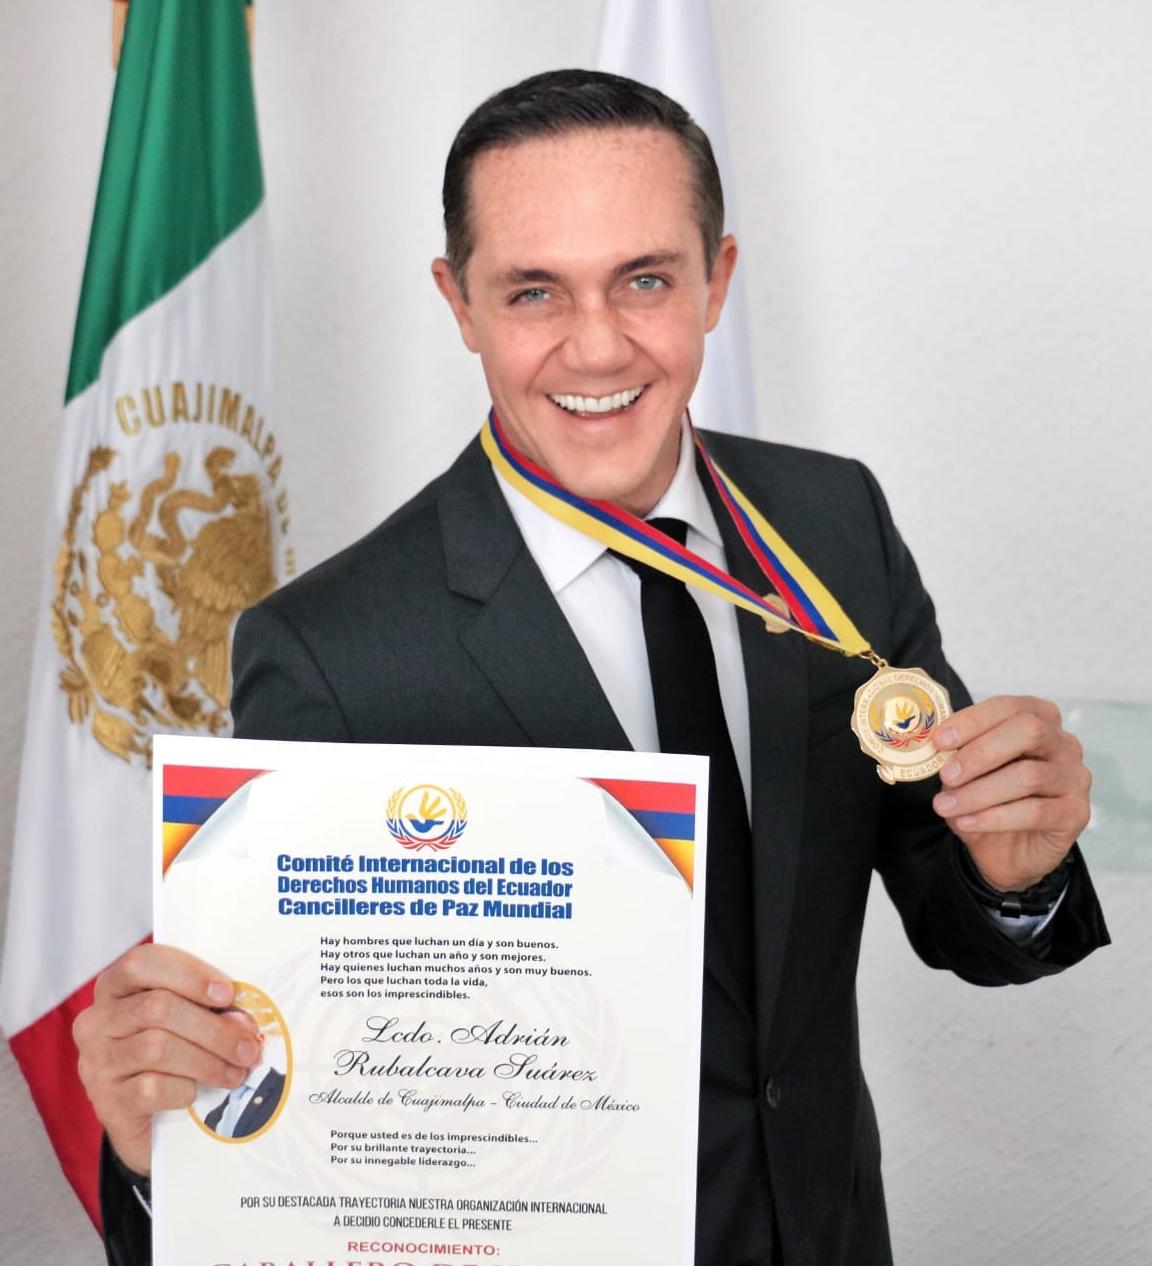 Adrián Rubalcava es nombrado Caballero de Honor por el comité internacional de Derechos Humanos de Ecuador